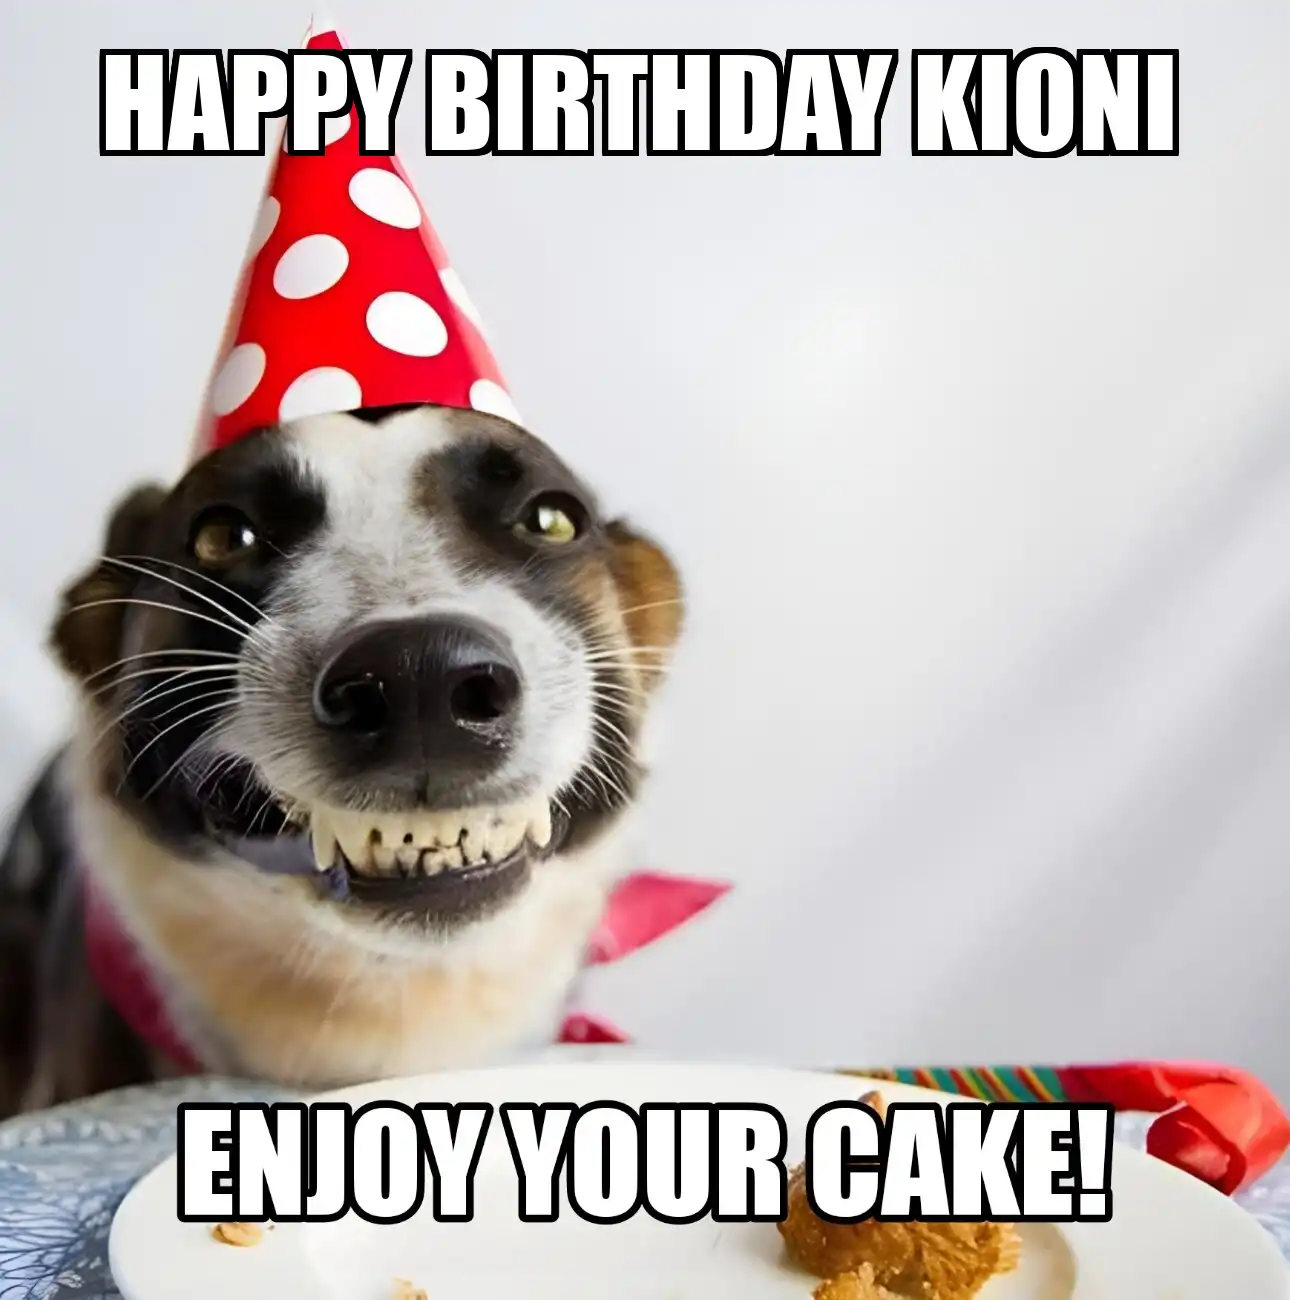 Happy Birthday Kioni Enjoy Your Cake Dog Meme